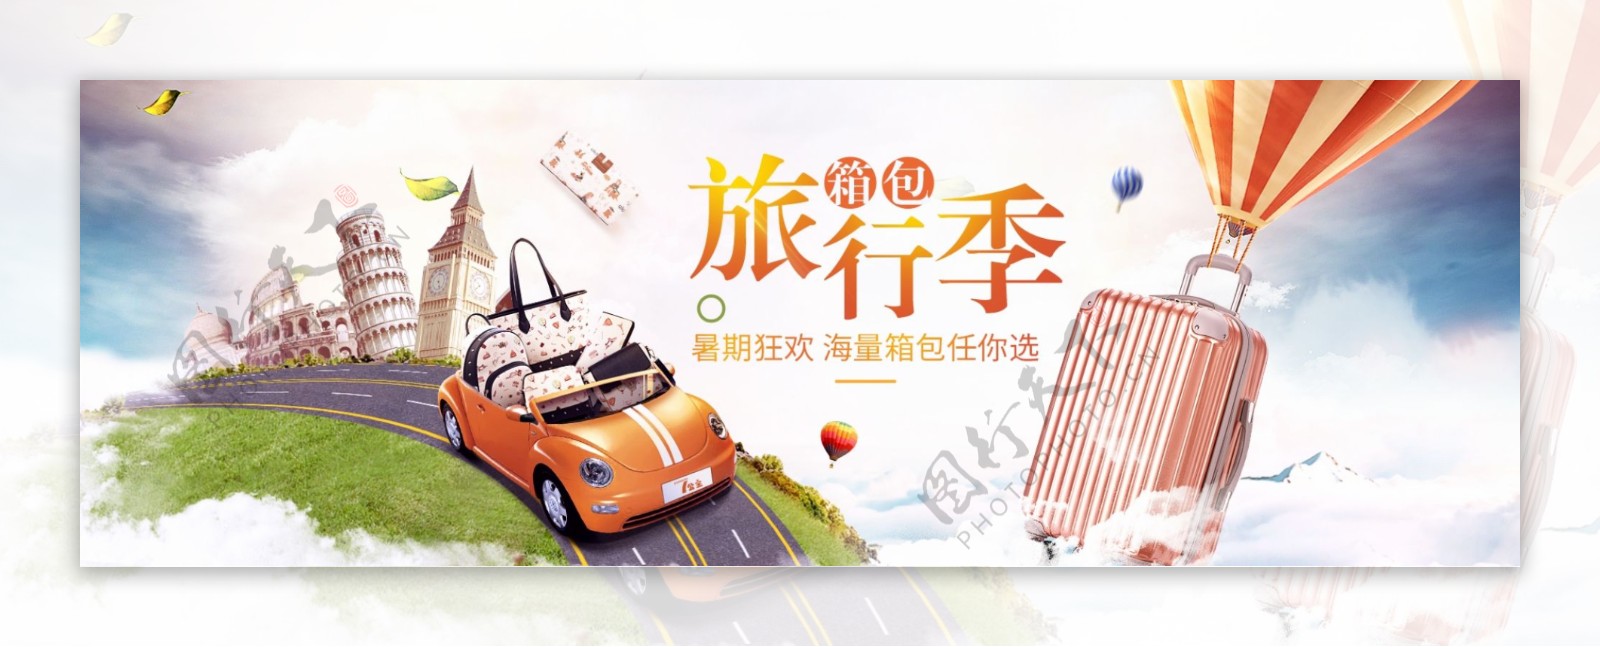 淘宝天猫夏日旅行箱包节促销海报